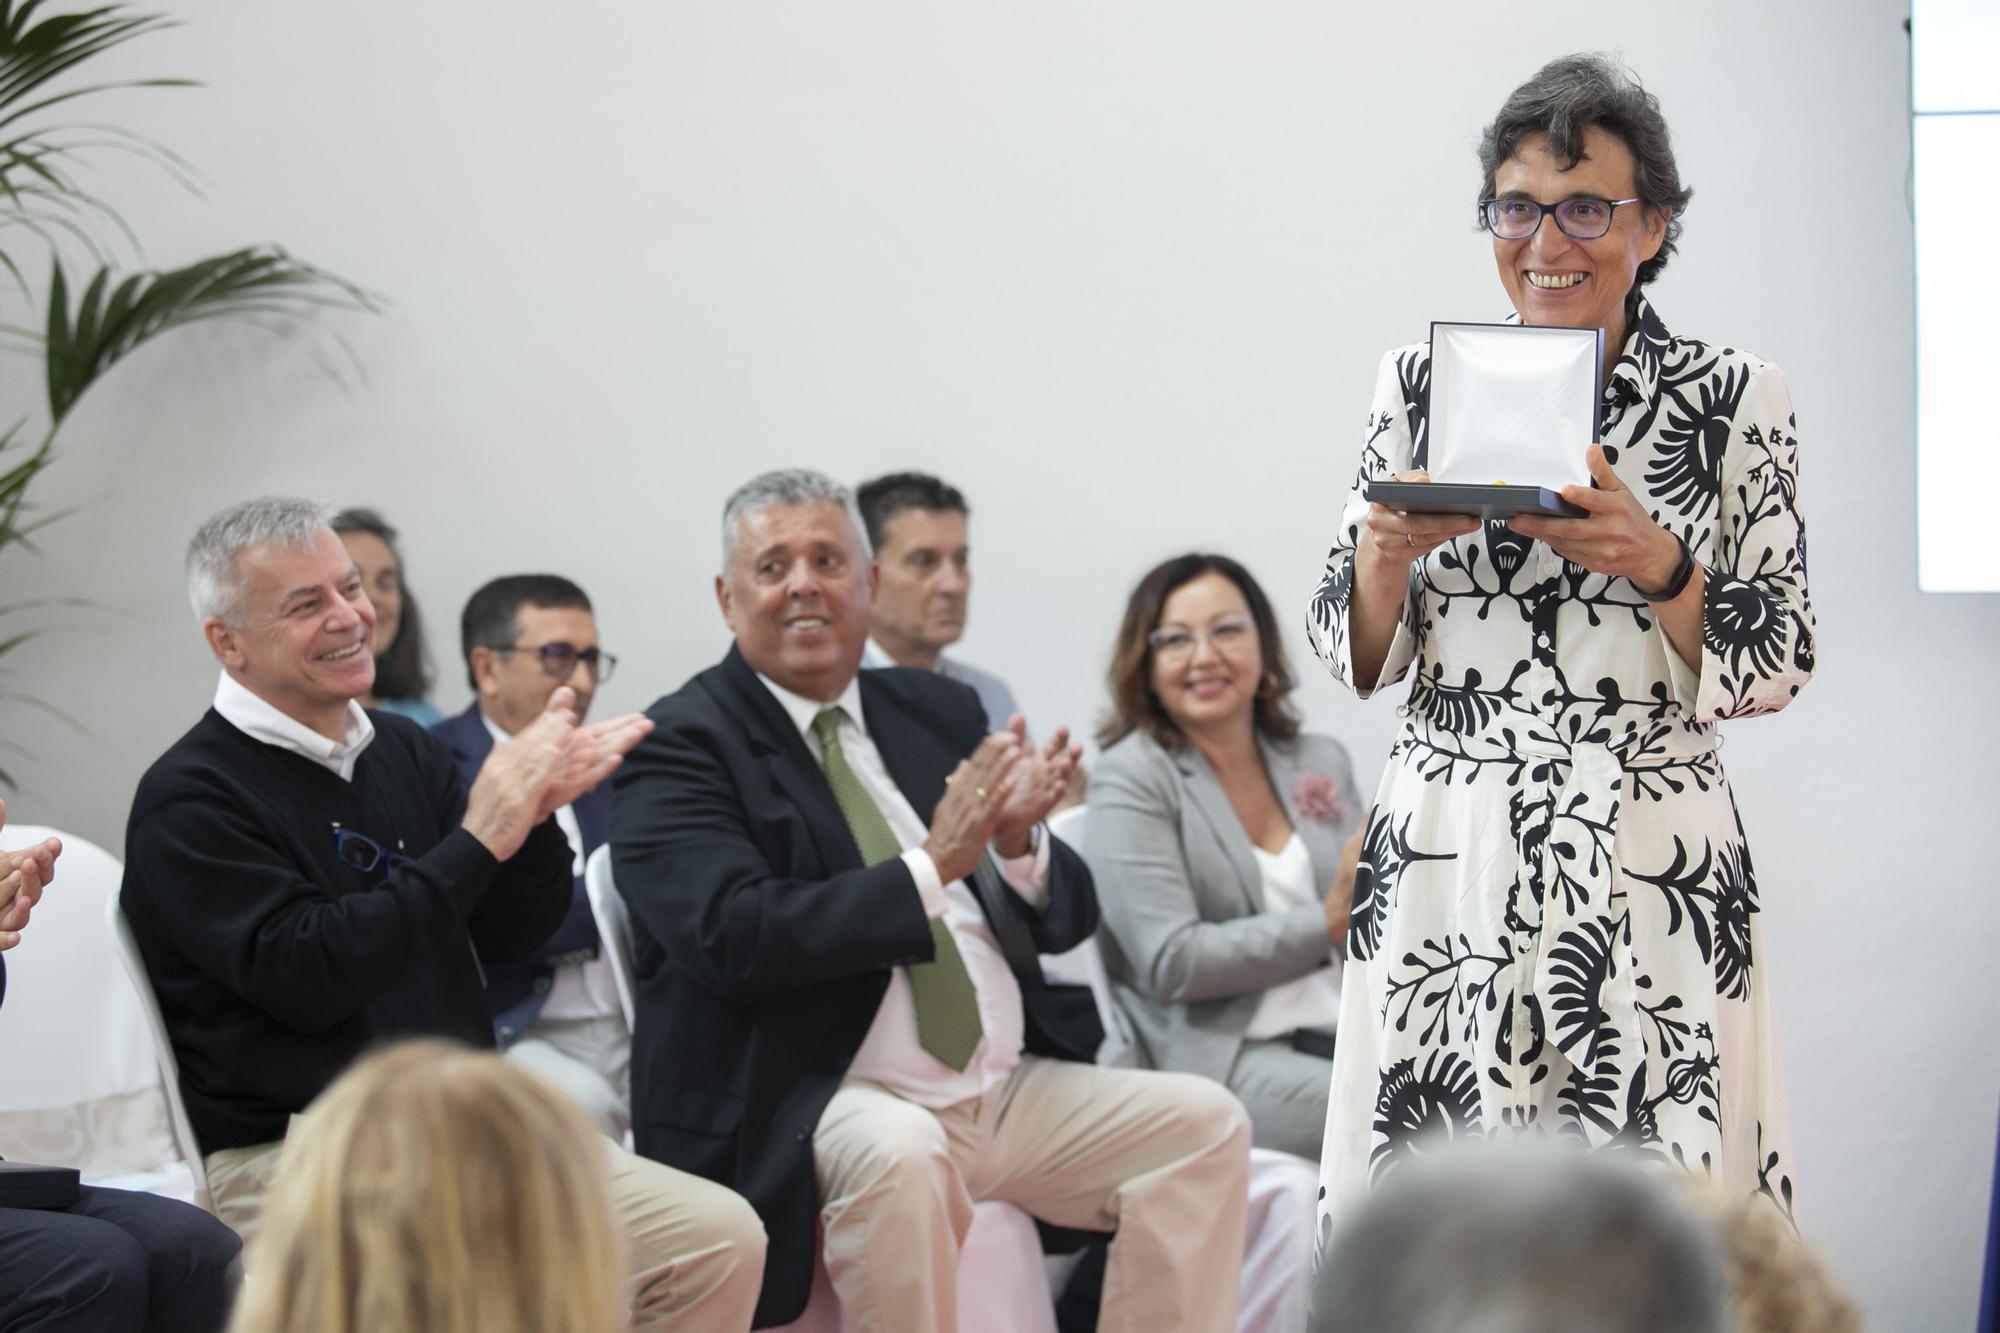 Educación entrega las distinciones Viera y Clavijo a docentes de enseñanza no universitaria de Canarias